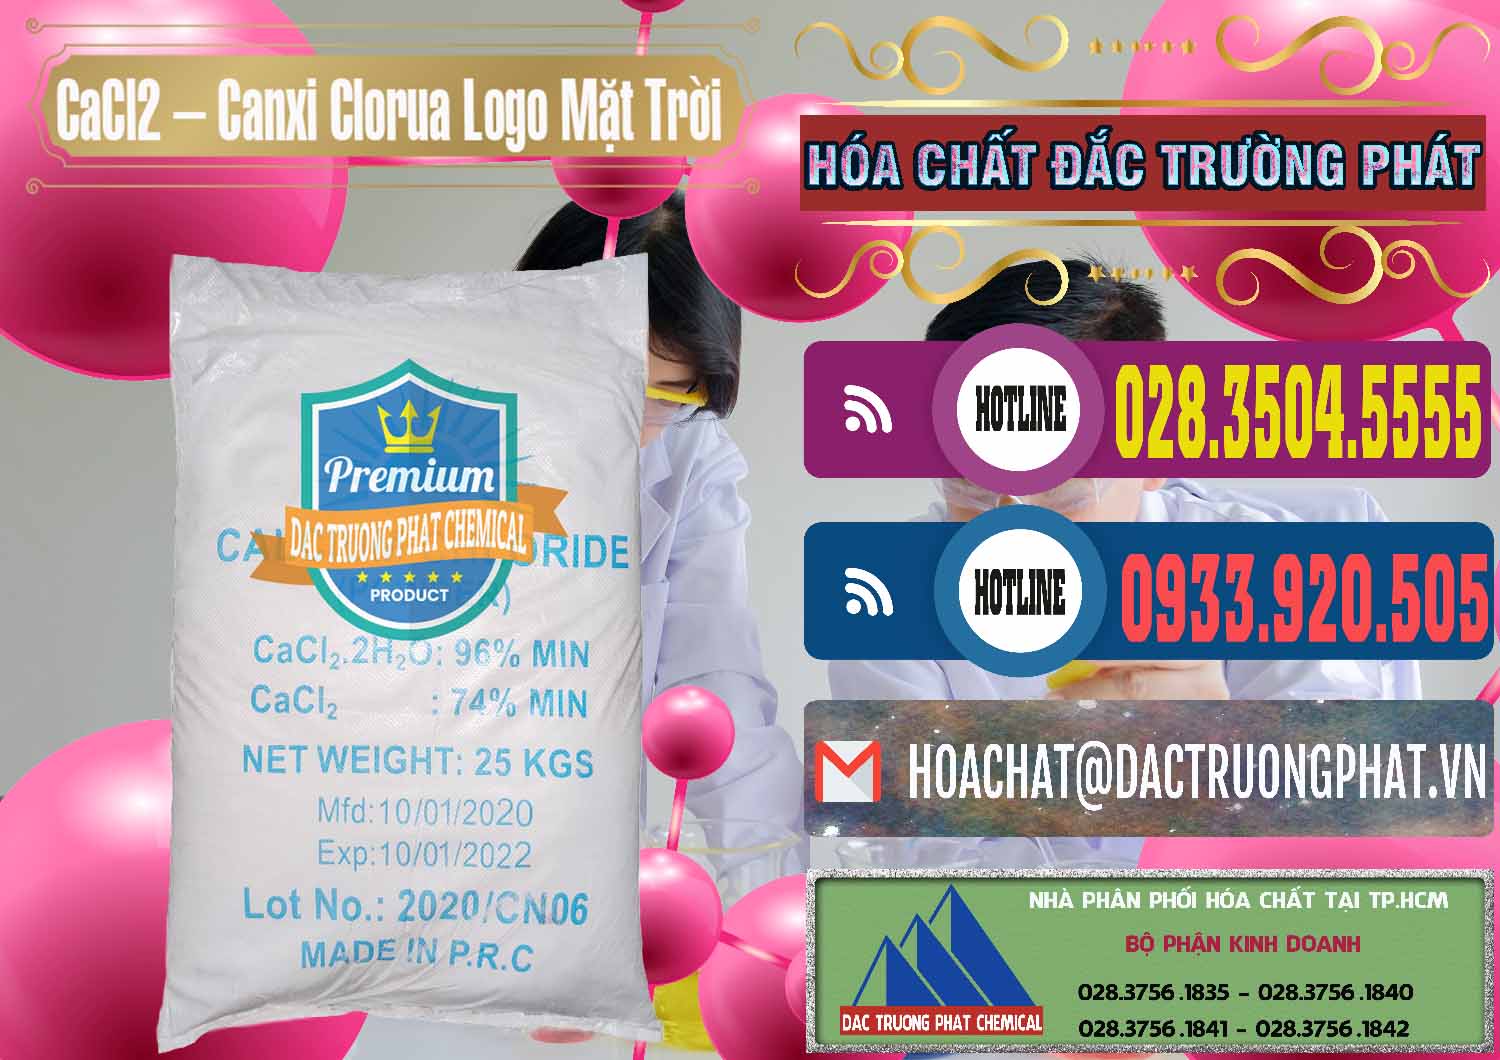 Công ty chuyên bán và phân phối CaCl2 – Canxi Clorua 96% Logo Mặt Trời Trung Quốc China - 0041 - Công ty chuyên cung cấp _ kinh doanh hóa chất tại TP.HCM - muabanhoachat.com.vn